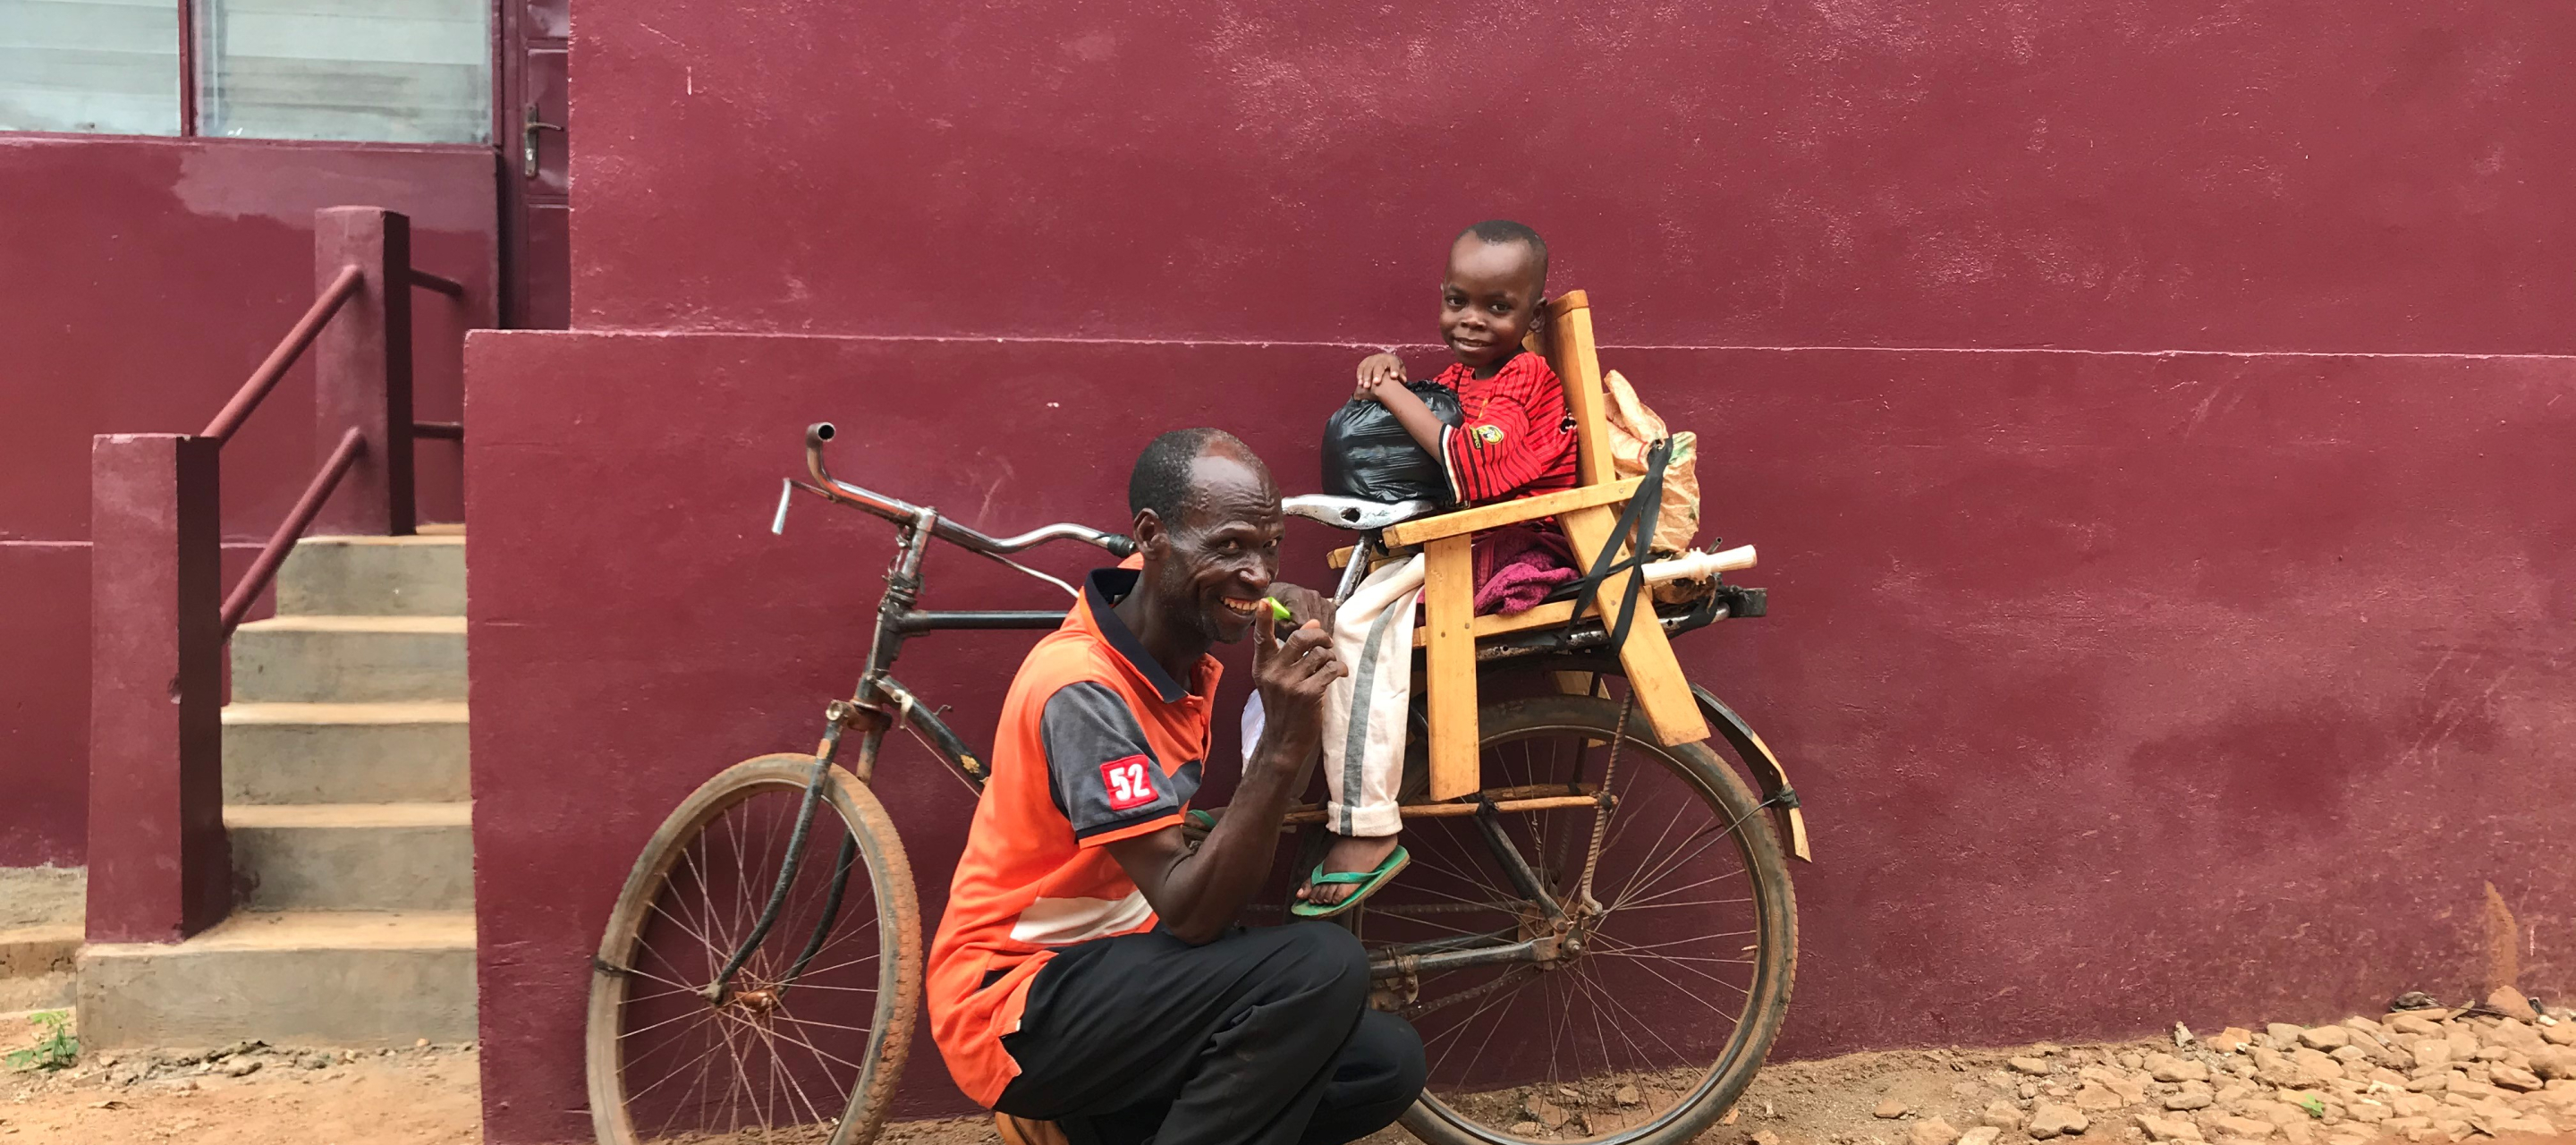 Der 8-jährige Dieu-Beni und sein Vater auf einem Fahrrad.